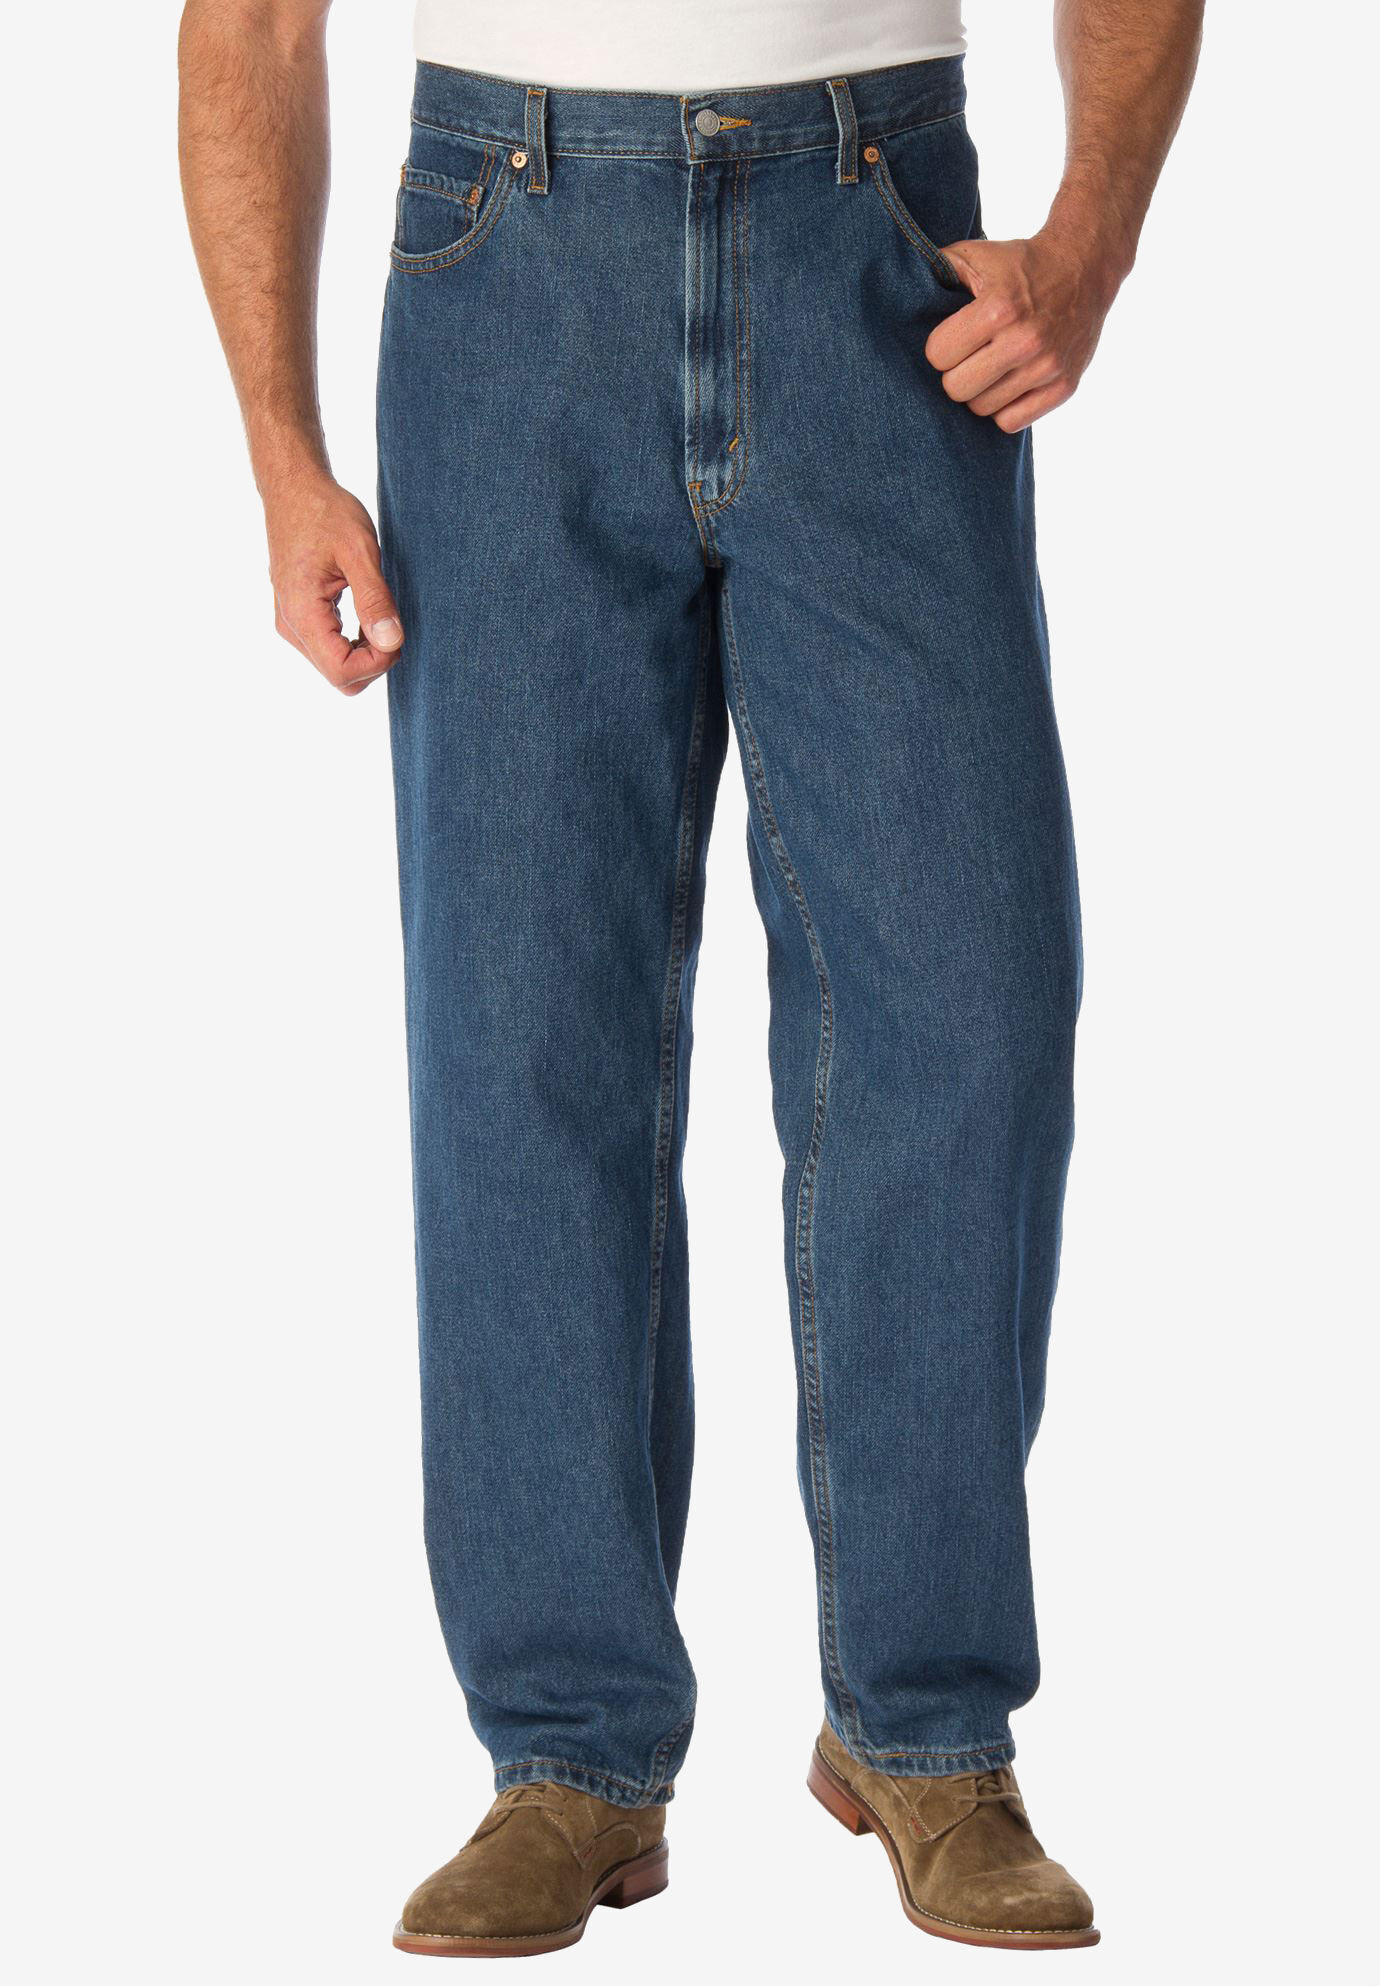 560 comfort fit jeans